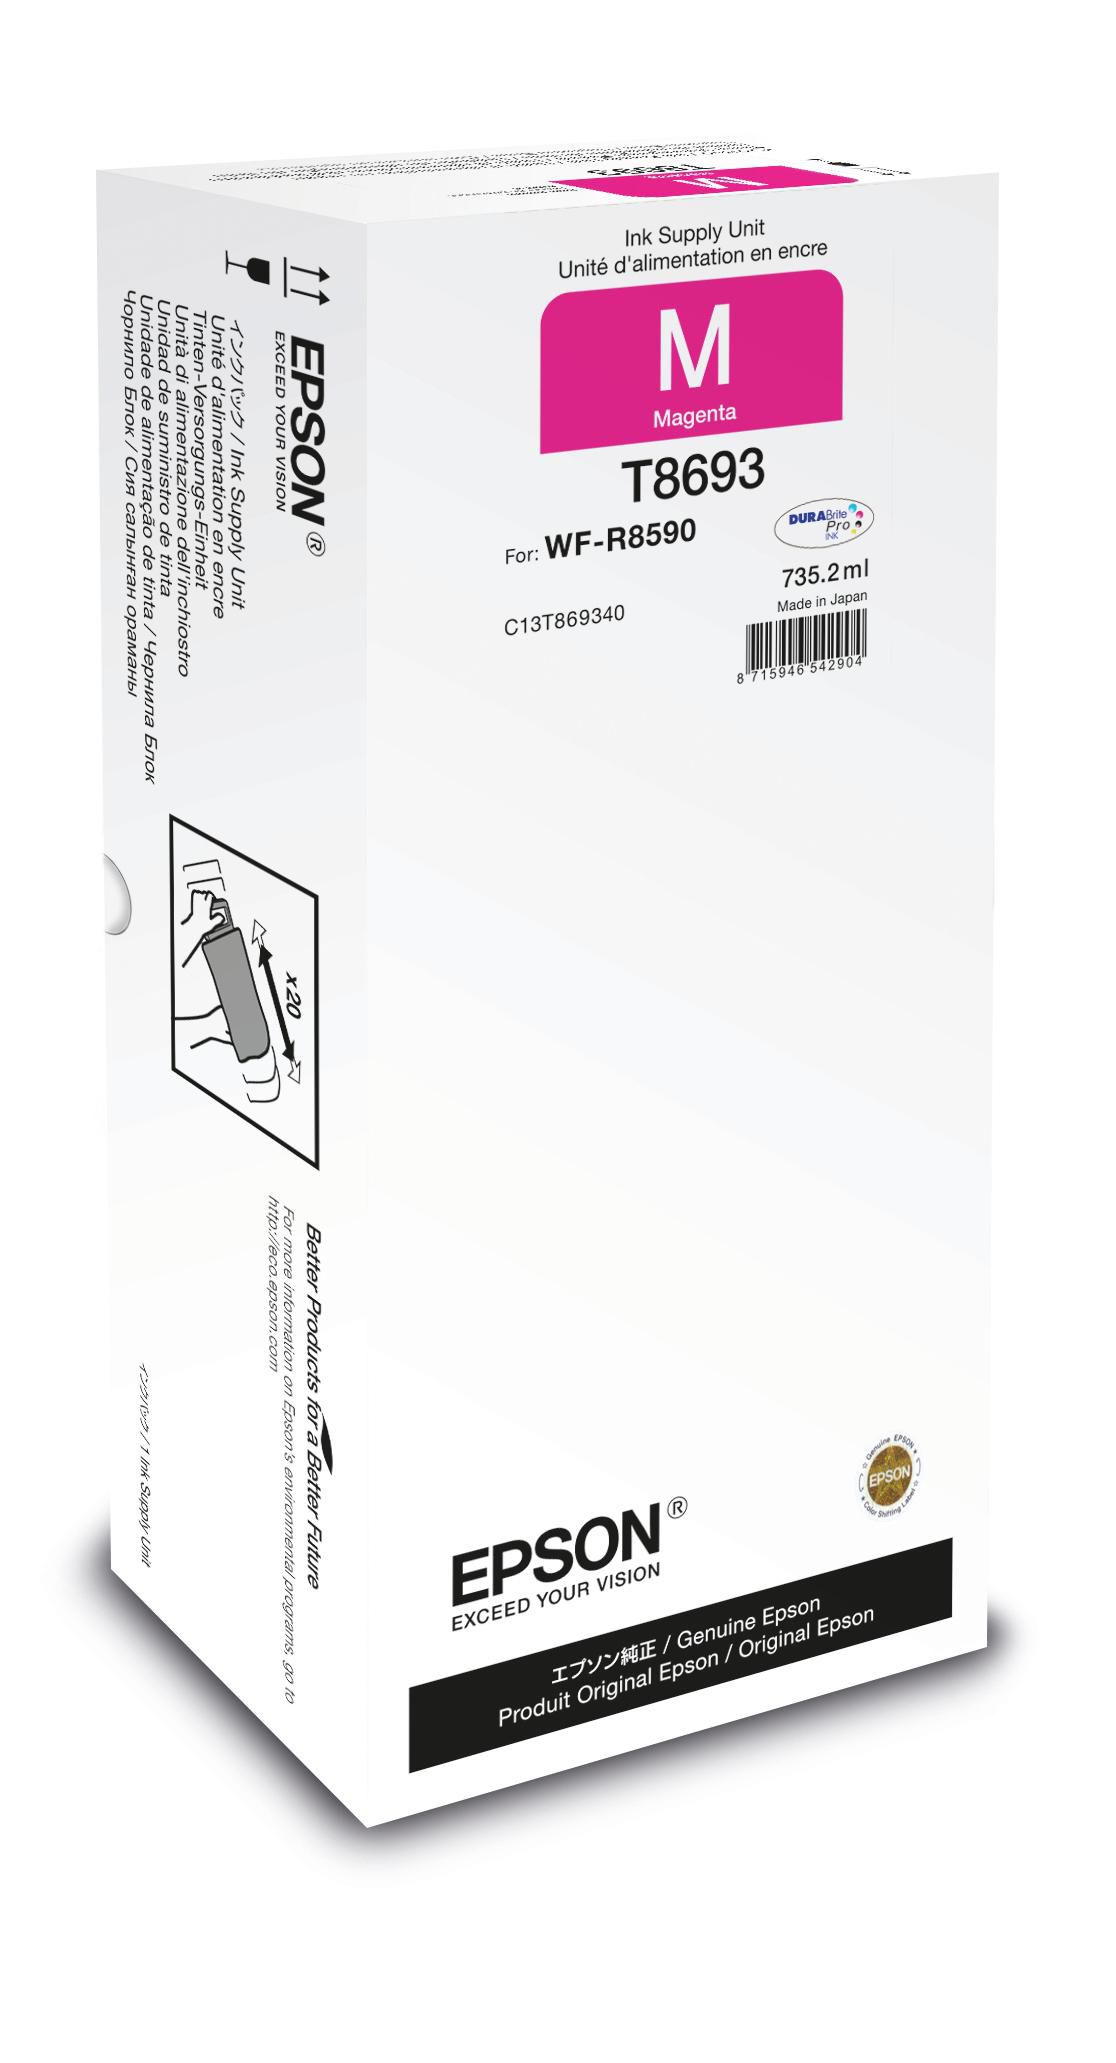 EPSON Ink Cart/WorkForce Pro WF-R8590 Magenta